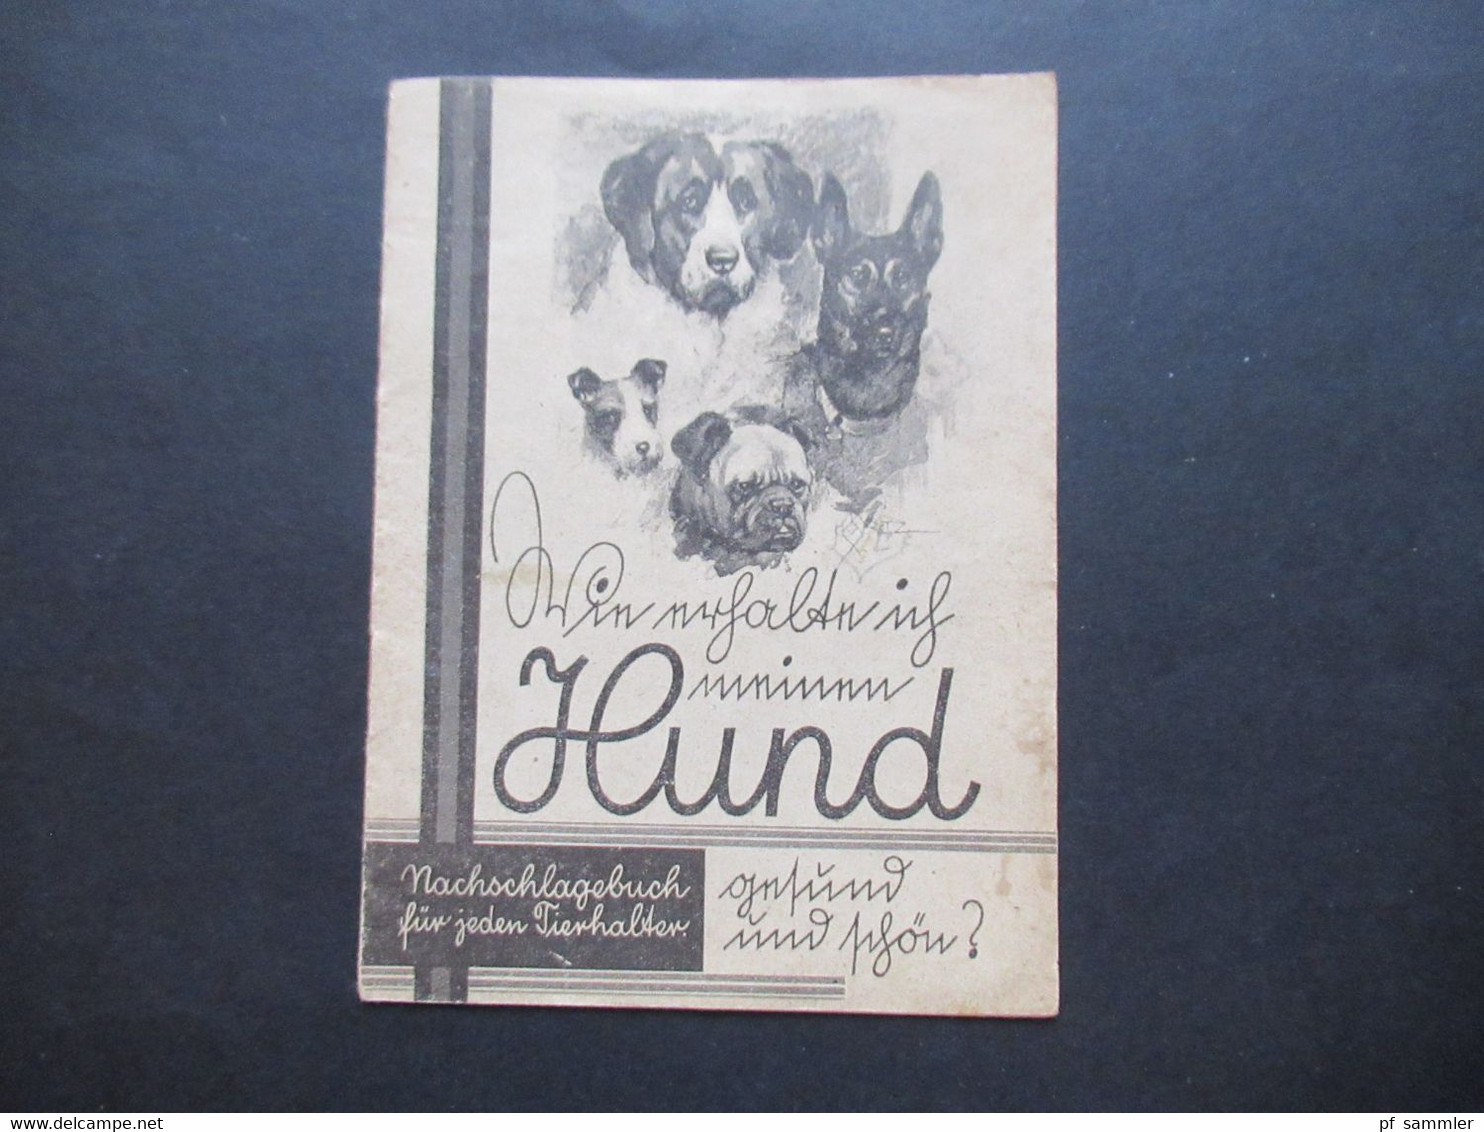 Kleines Heft / Nachschlagebuch Für Jeden Hundehalter Gesund Und Schön Ca. 1950er Jahre Creolinwerke Hamburg - Advertising